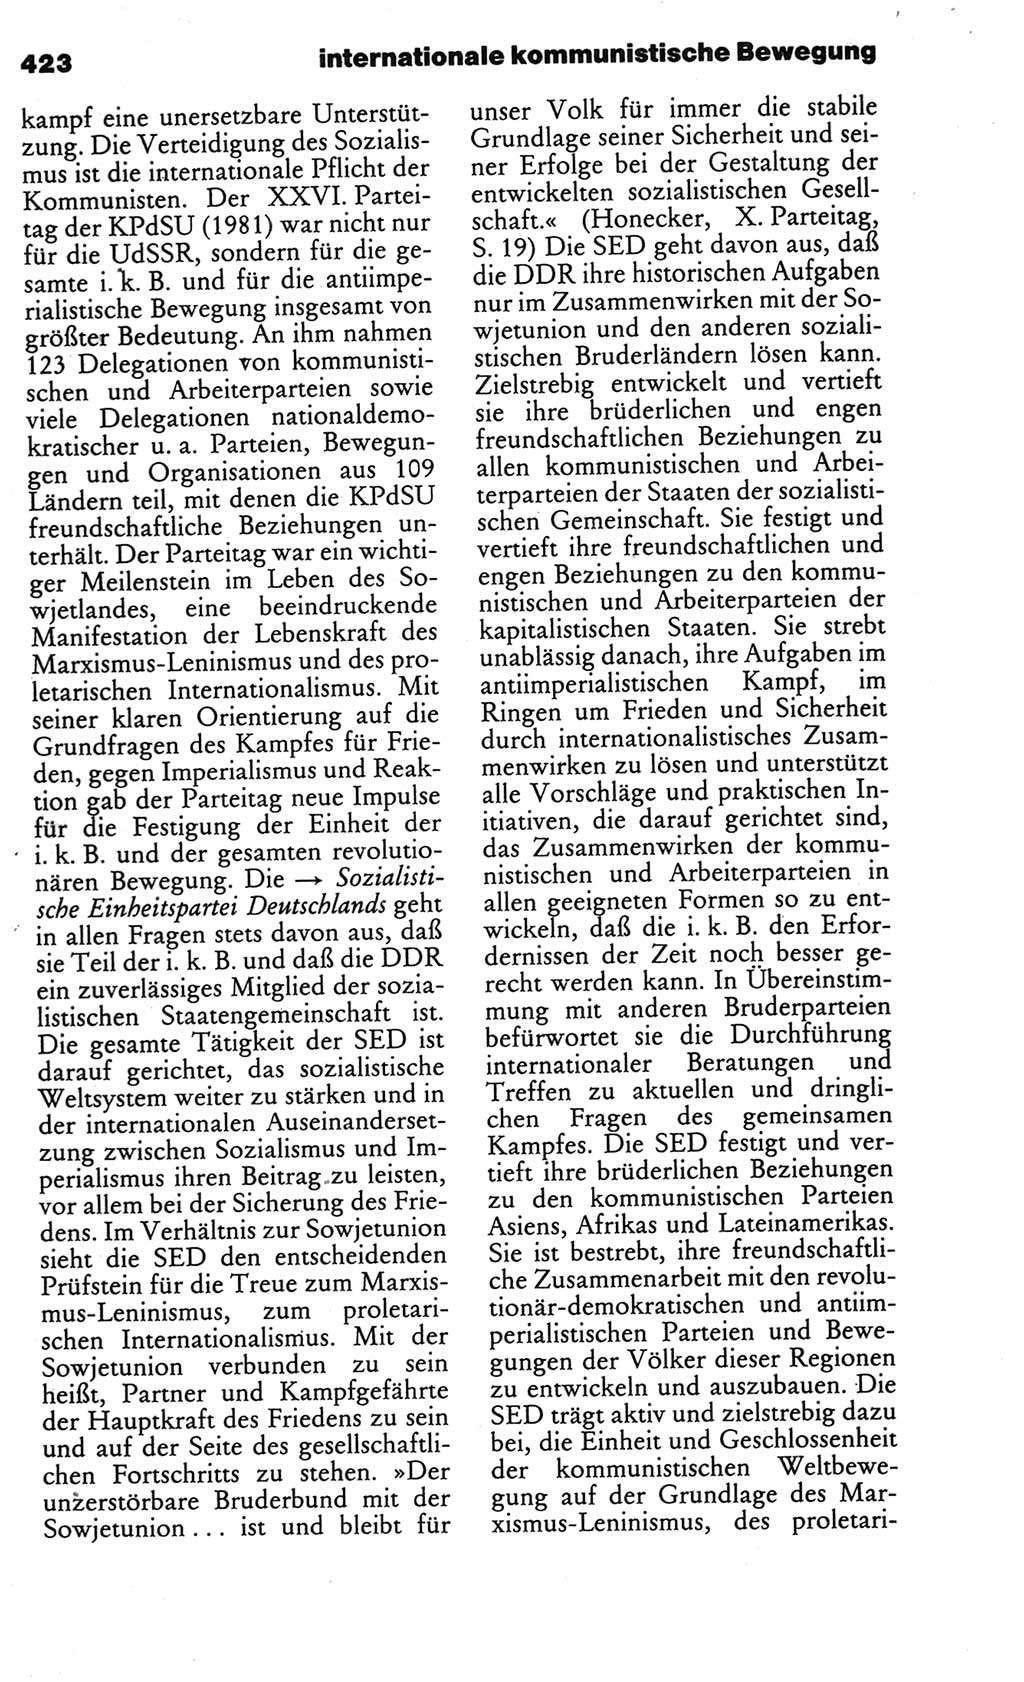 Kleines politisches Wörterbuch [Deutsche Demokratische Republik (DDR)] 1986, Seite 423 (Kl. pol. Wb. DDR 1986, S. 423)